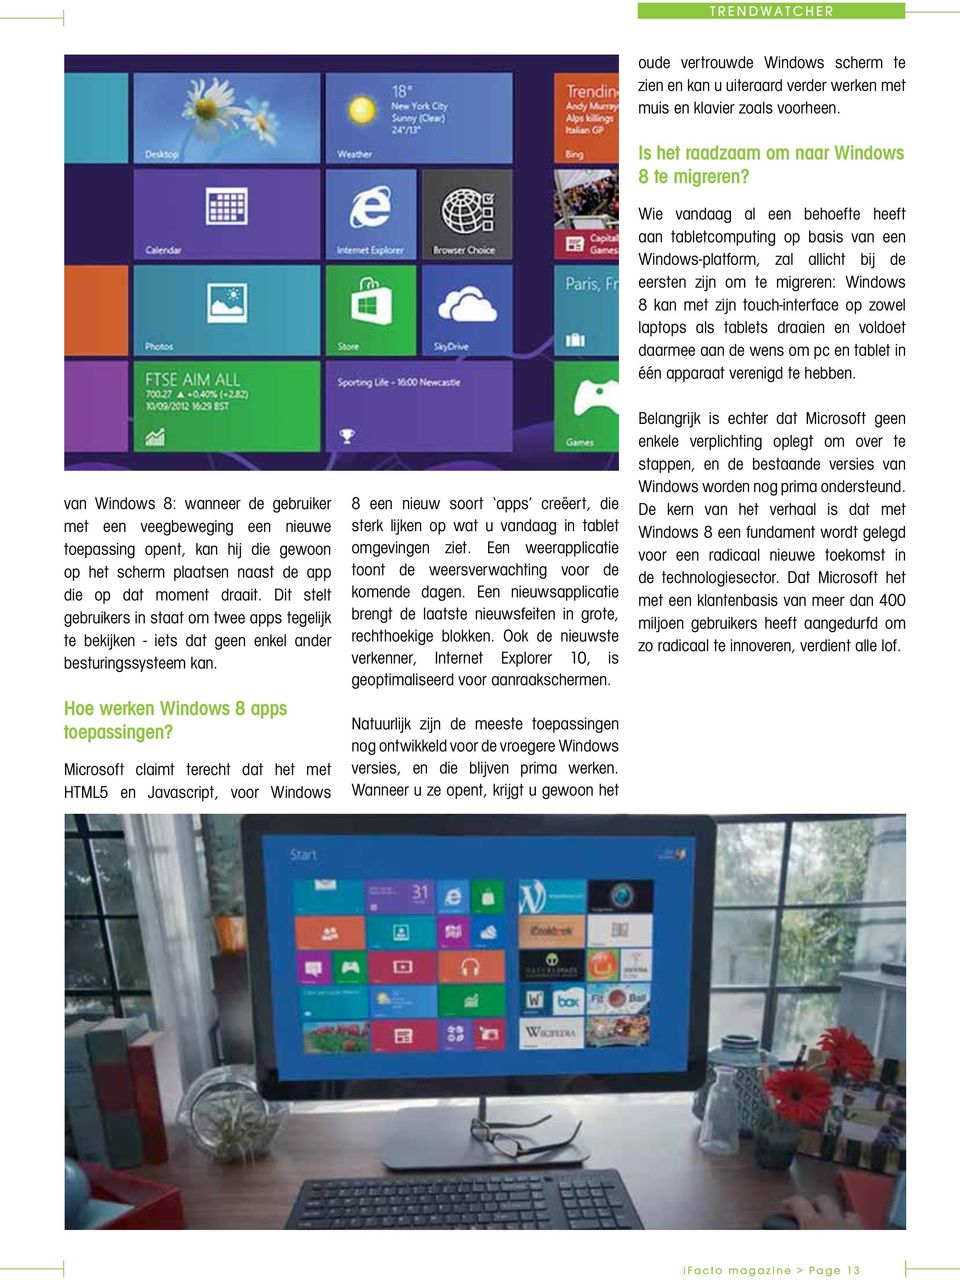 Microsoft claimt terecht dat het met HTML5 en Javascript, voor Windows 8 een nieuw soort apps creëert, die sterk lijken op wat u vandaag in tablet omgevingen ziet.